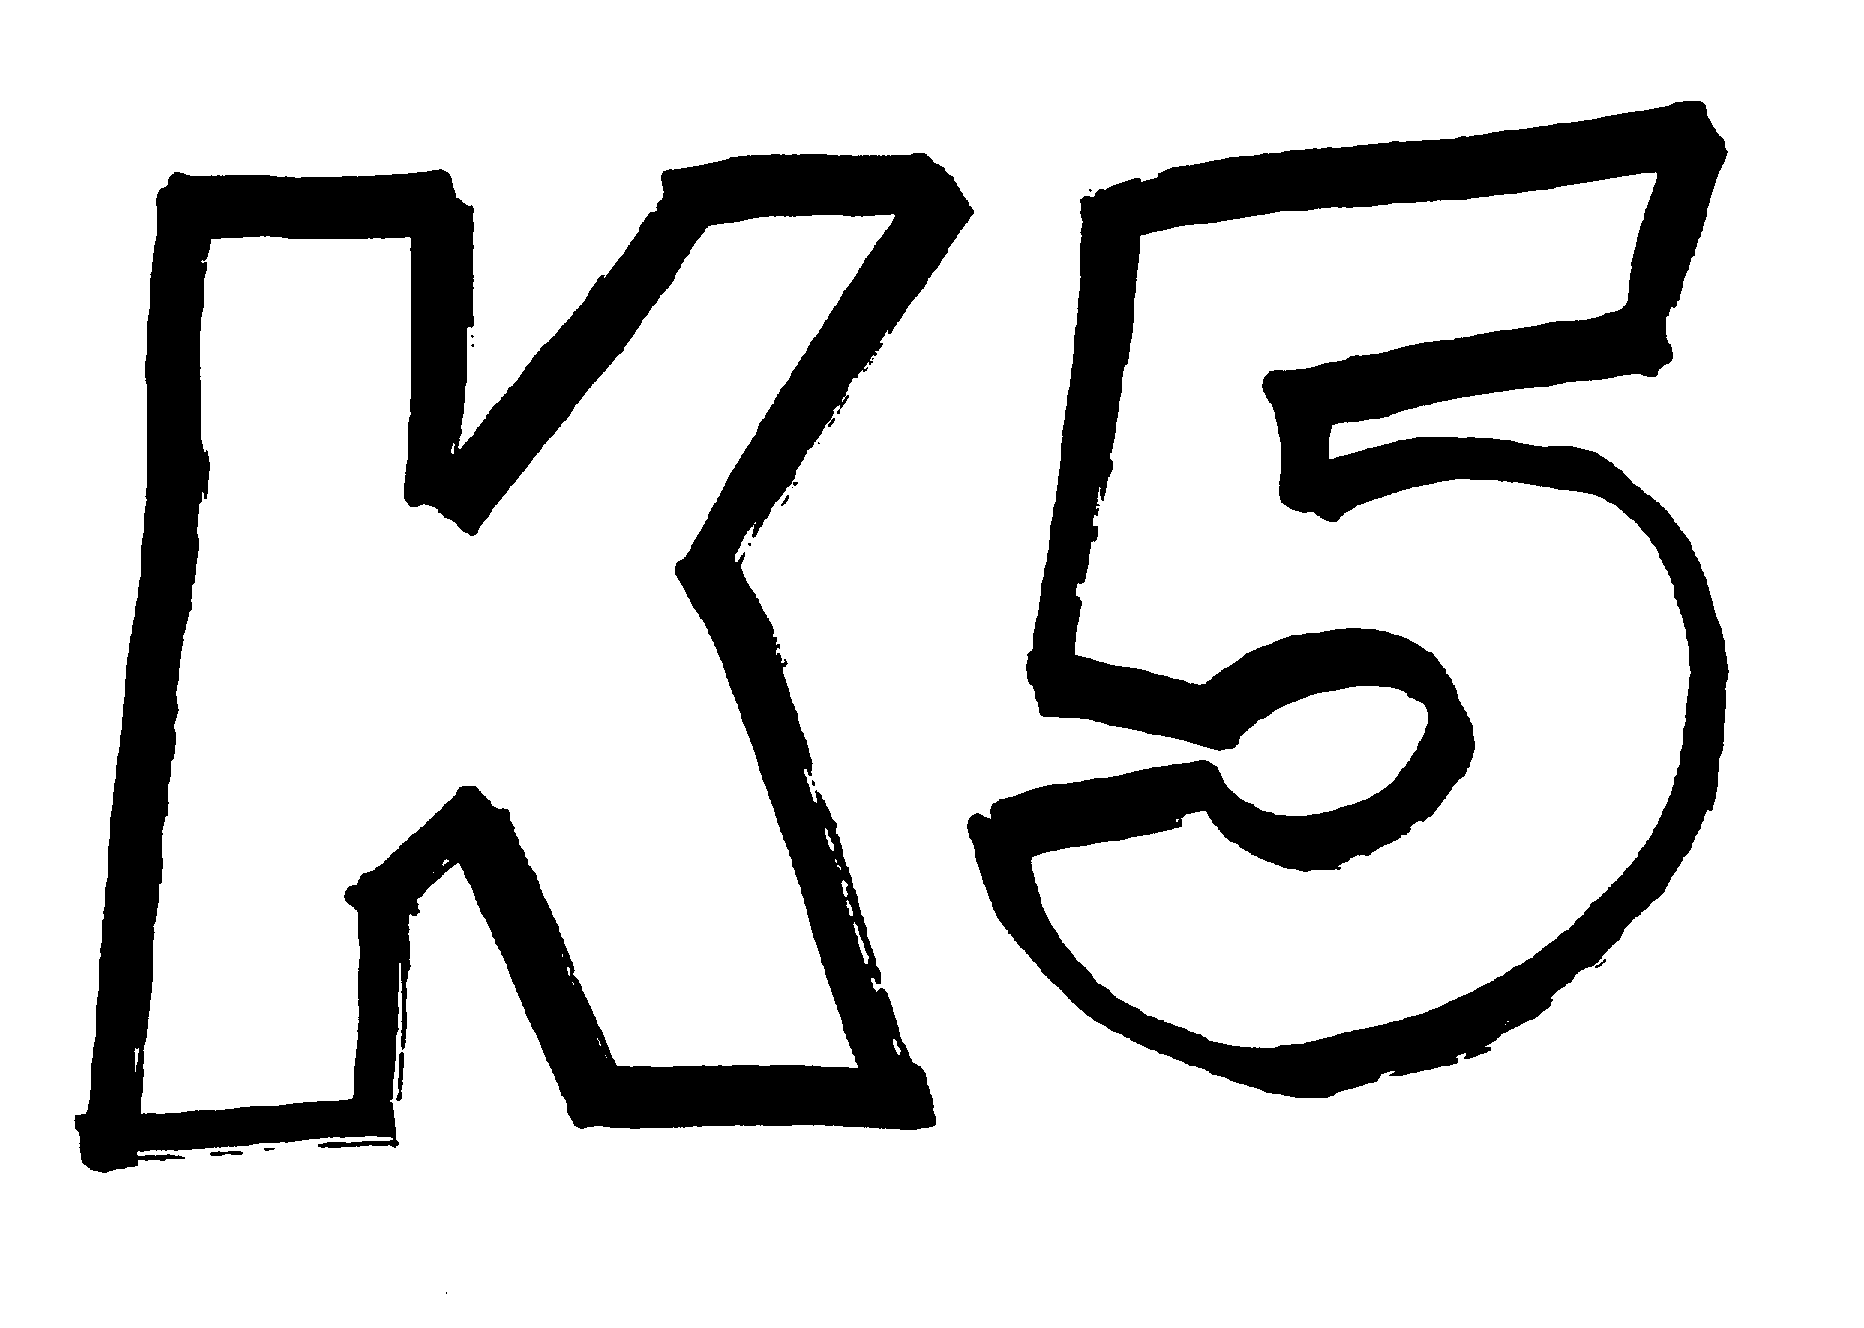 Trademark Logo K5